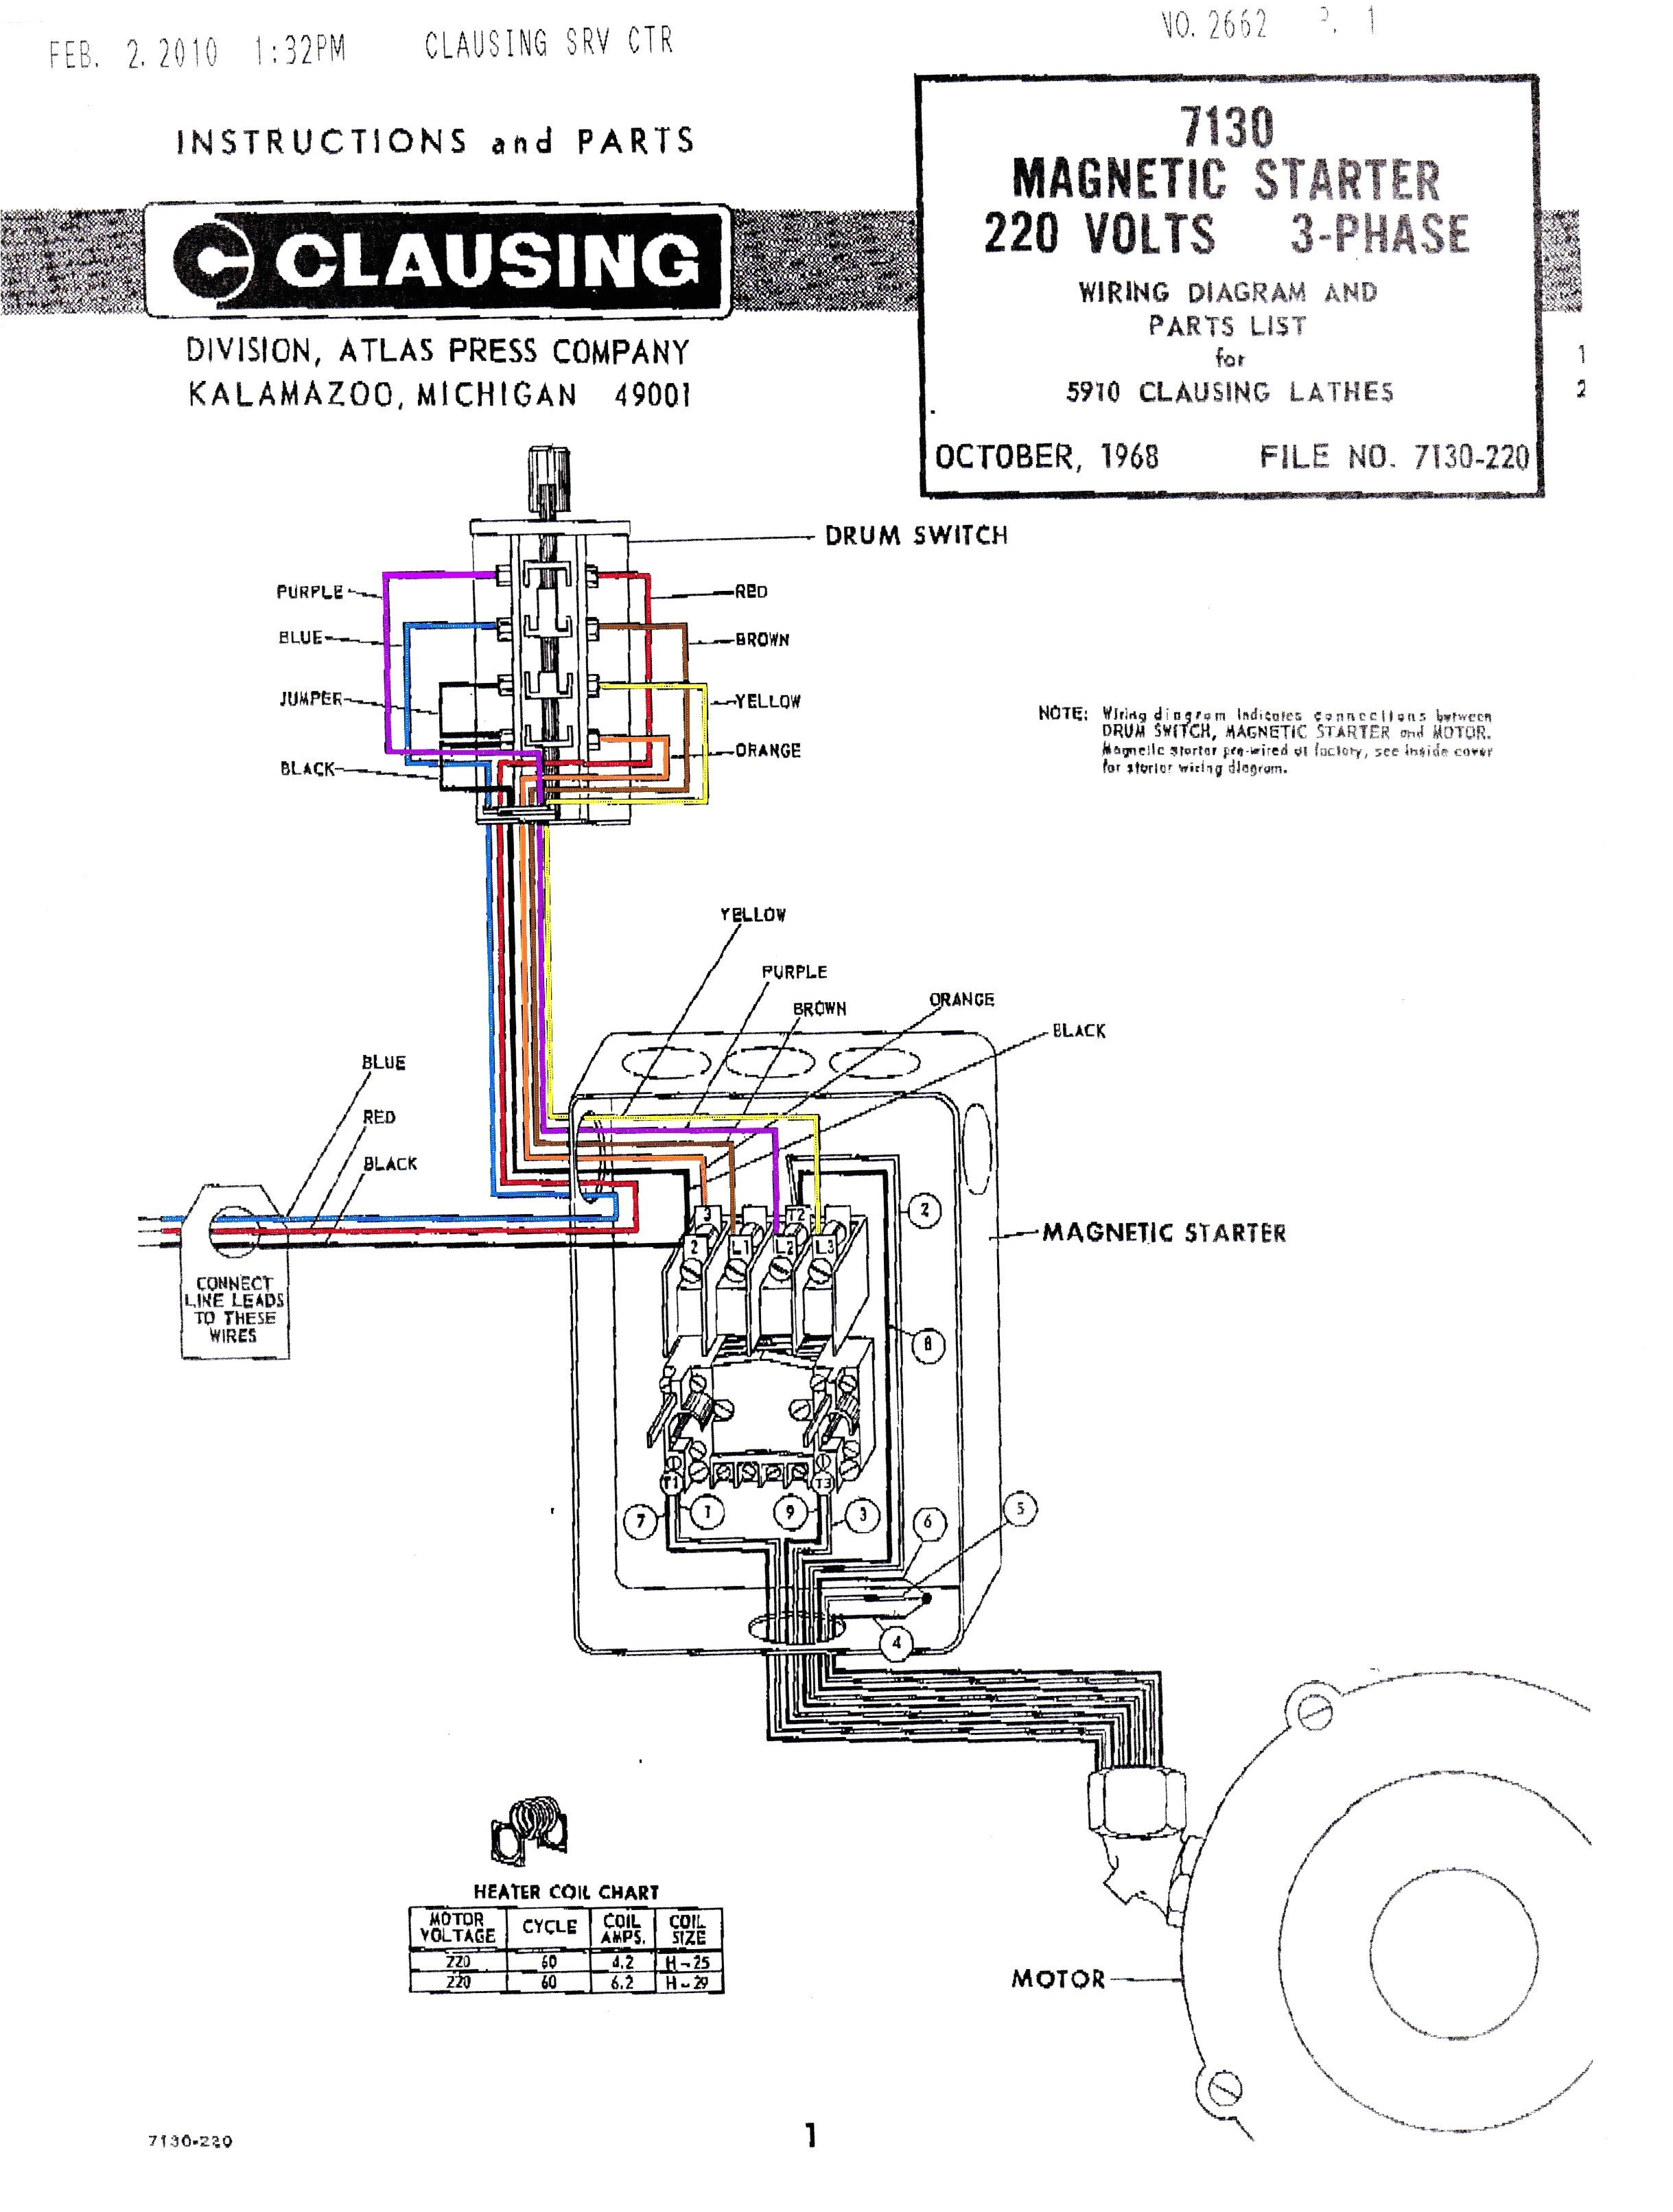 siemens motor wiring diagrams wiring diagram database siemens motor wiring diagrams wiring diagram blog siemens motor